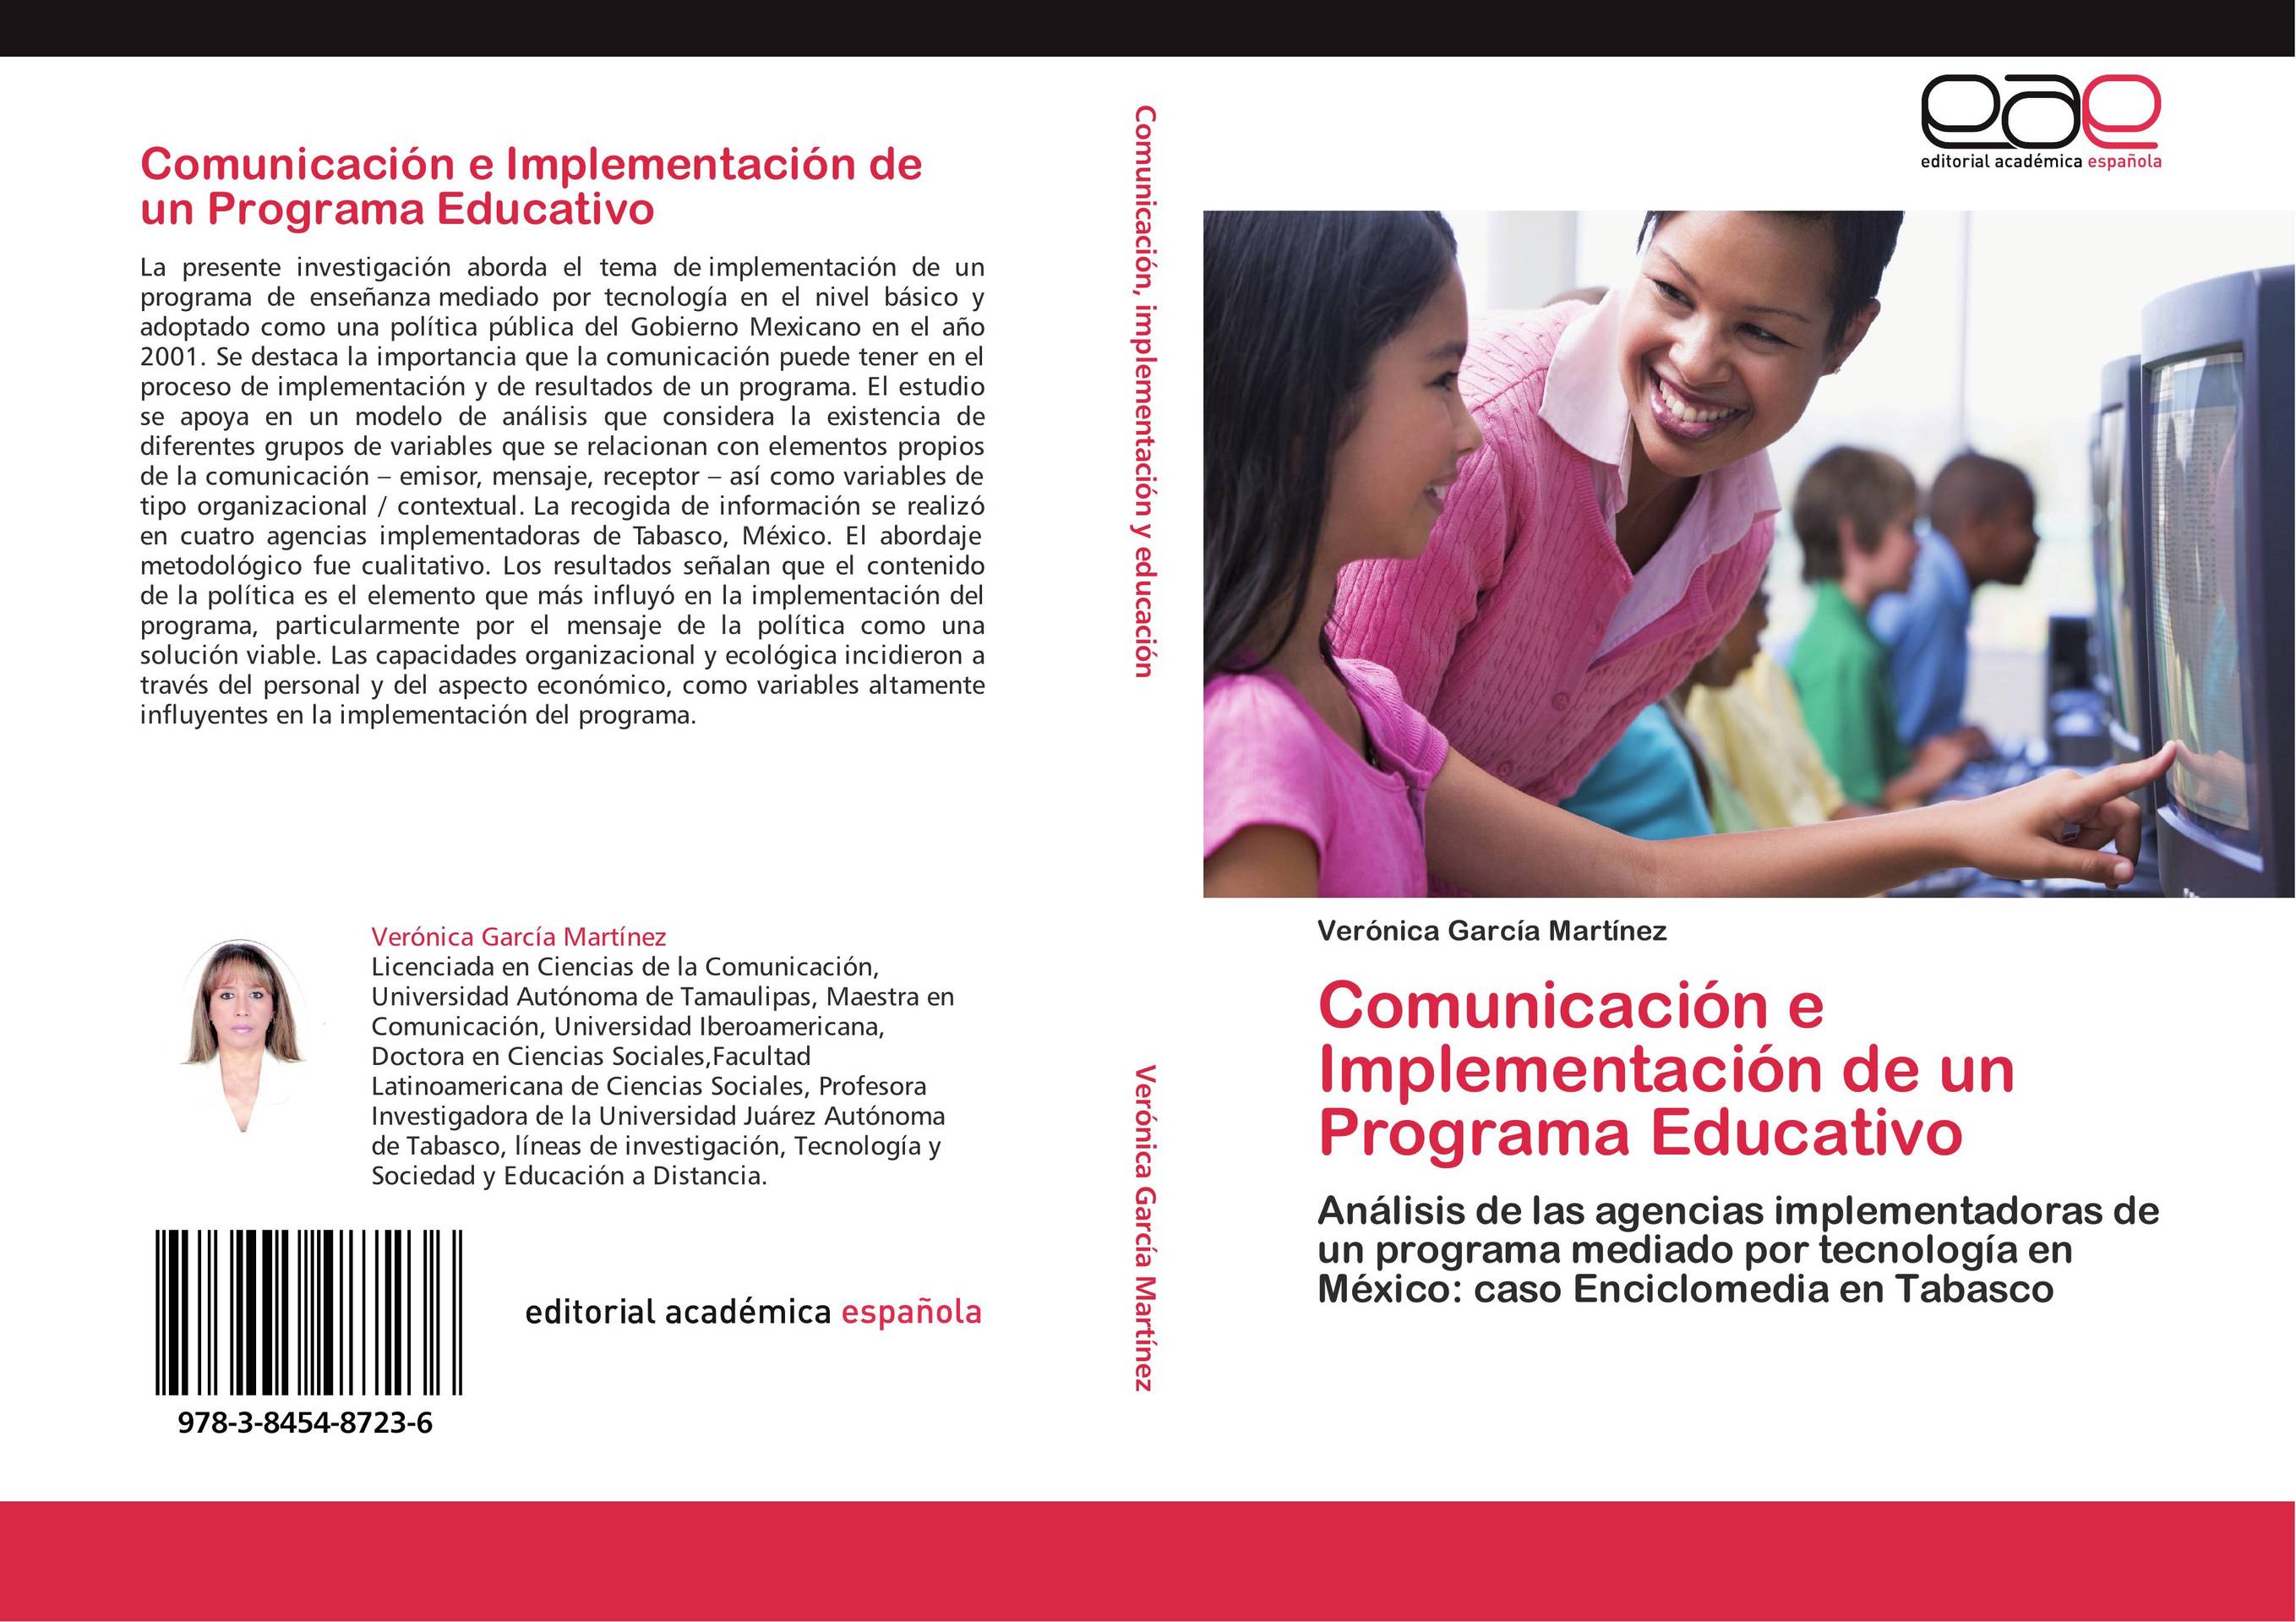 Comunicación e Implementación de un Programa Educativo